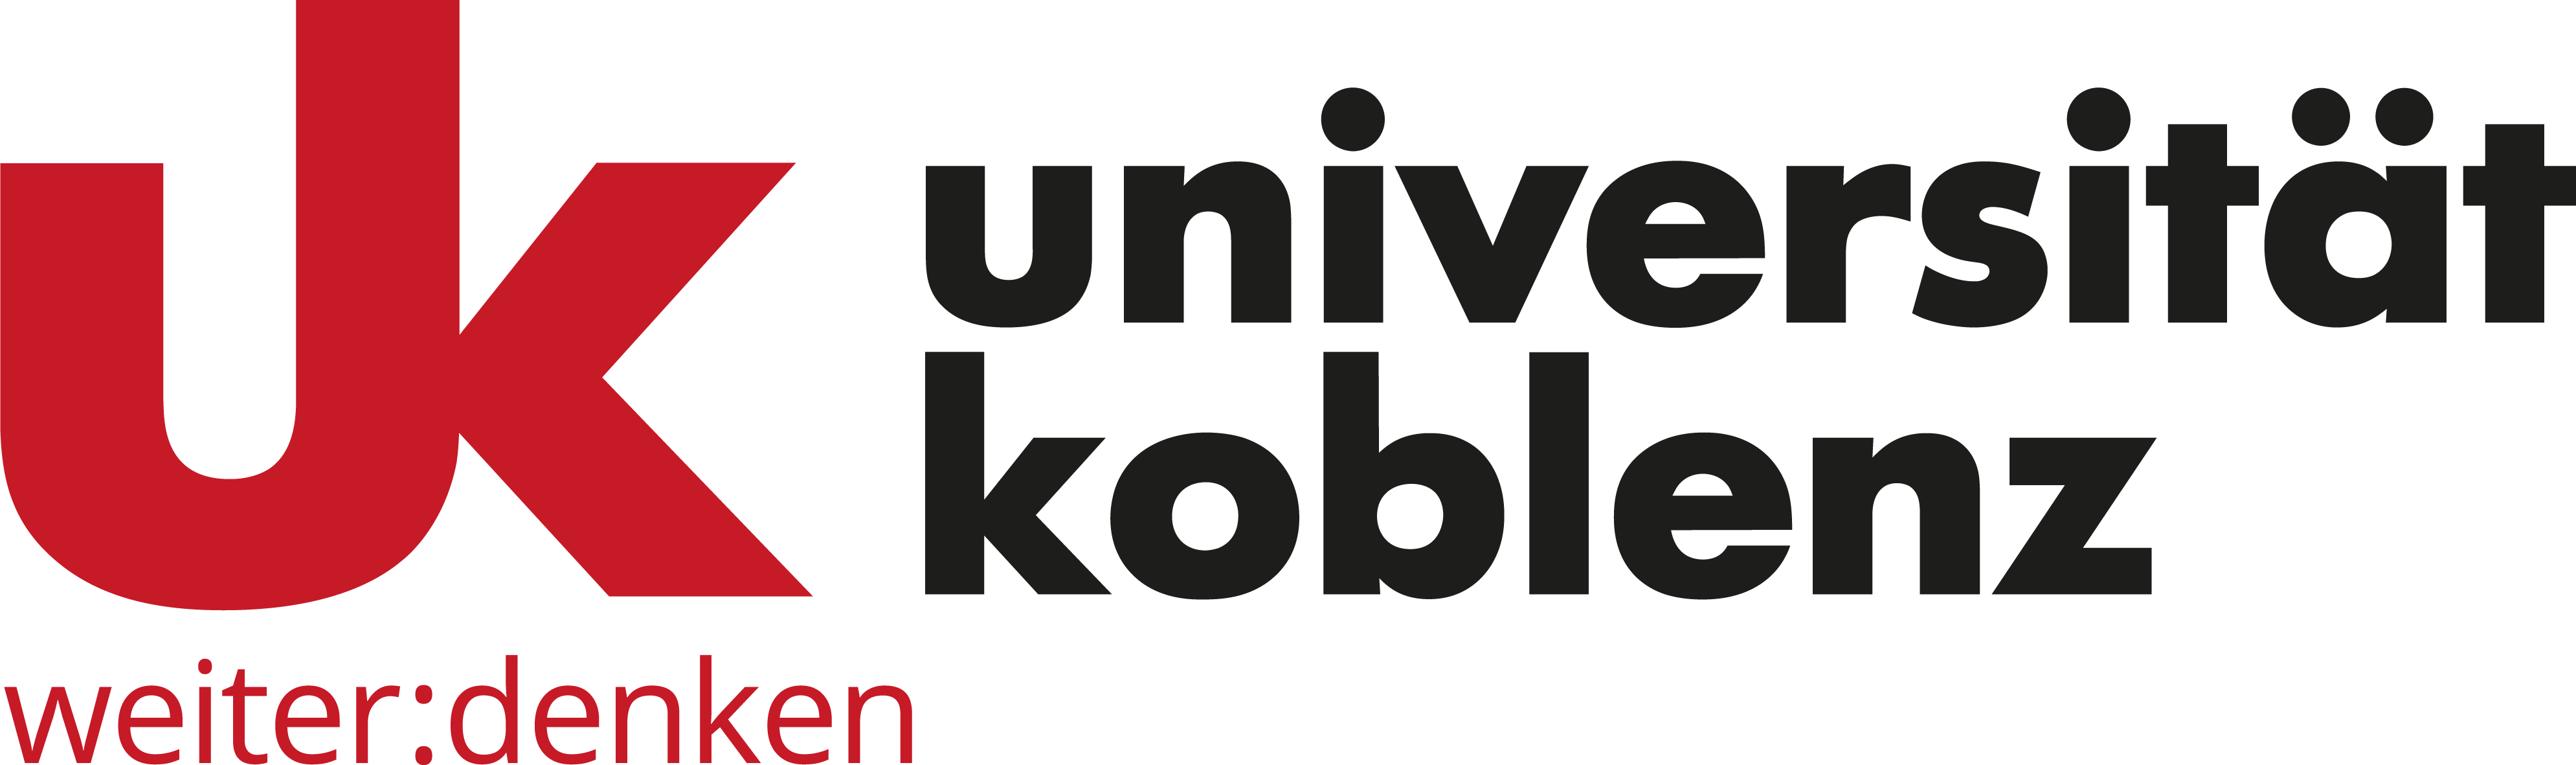 Logo der Hochschule Universität Koblenz